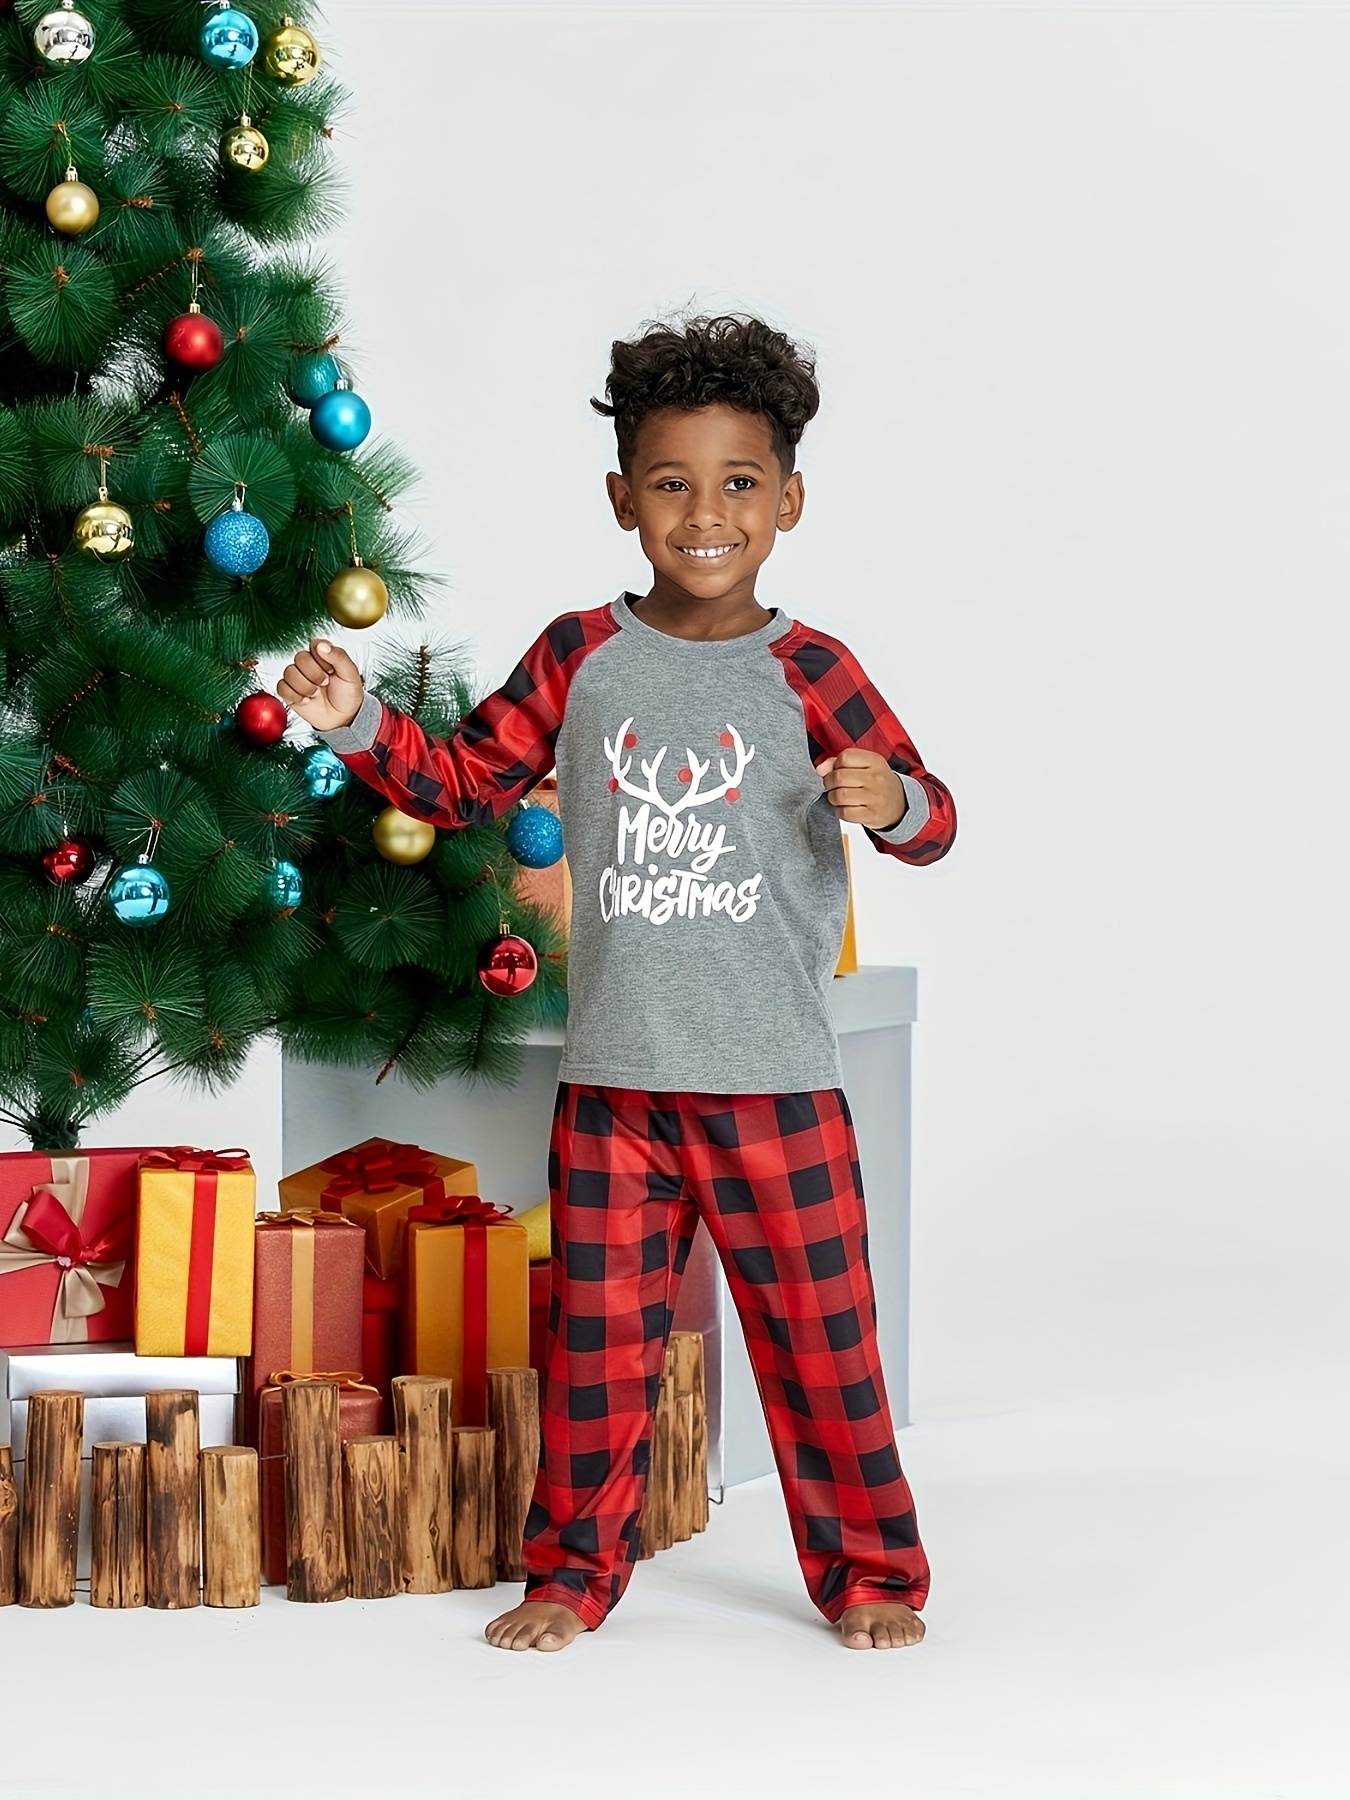 Christmas Pajamas for Family, Xmas Matching Pajamas Sets